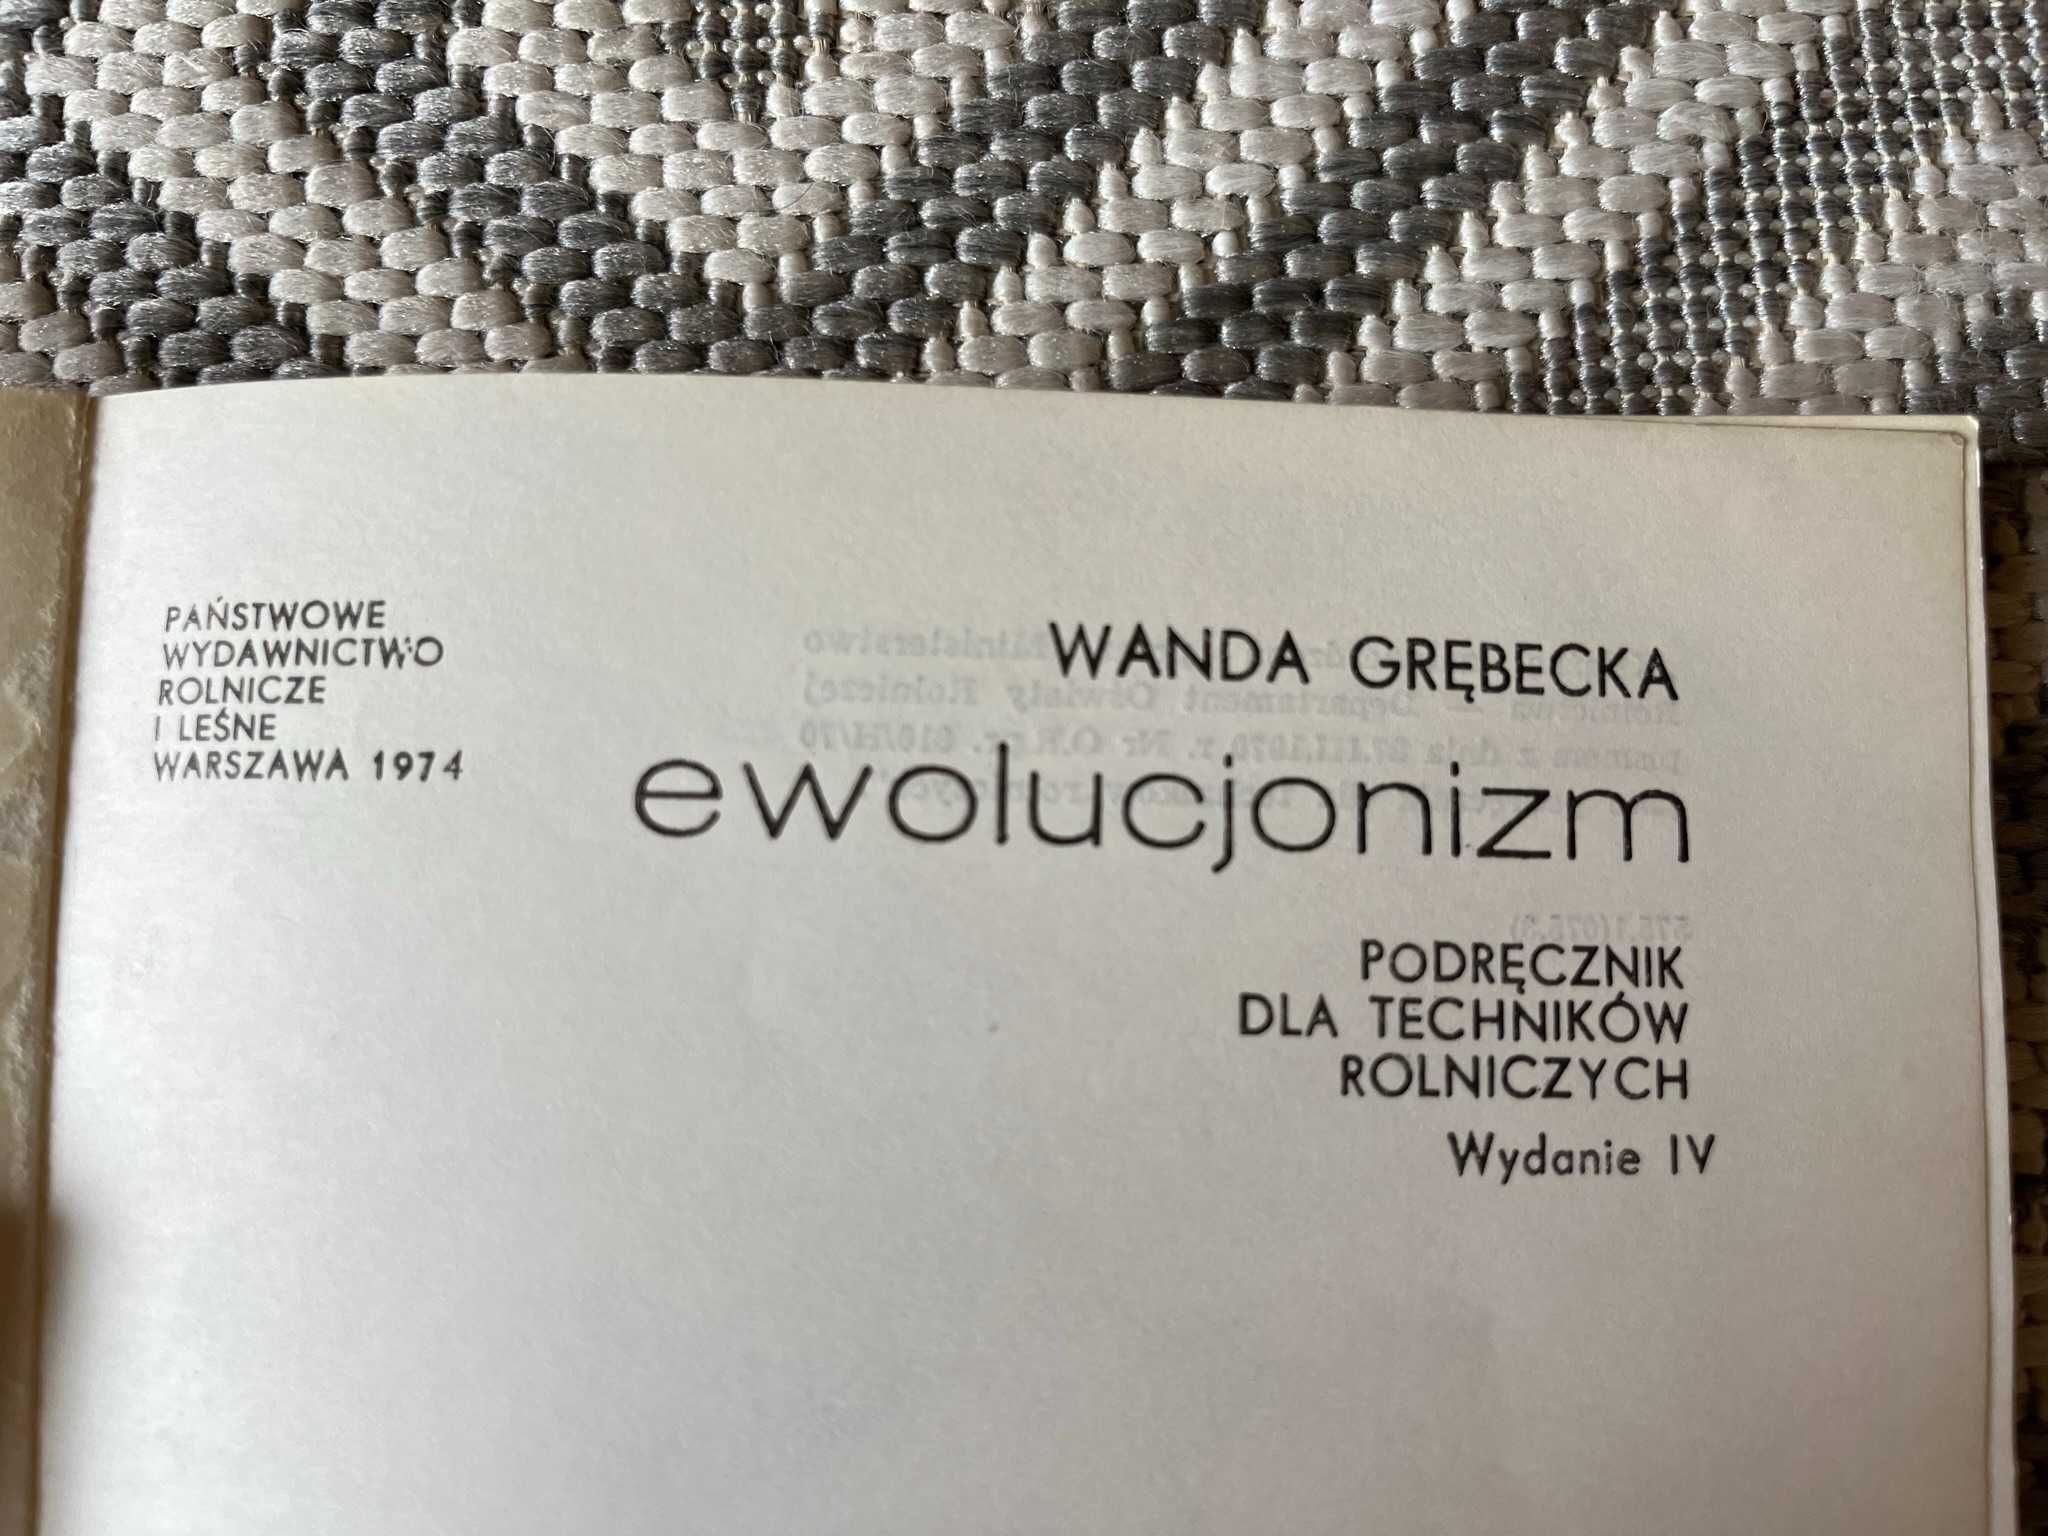 W. Grębecka "ewolucjonizm"